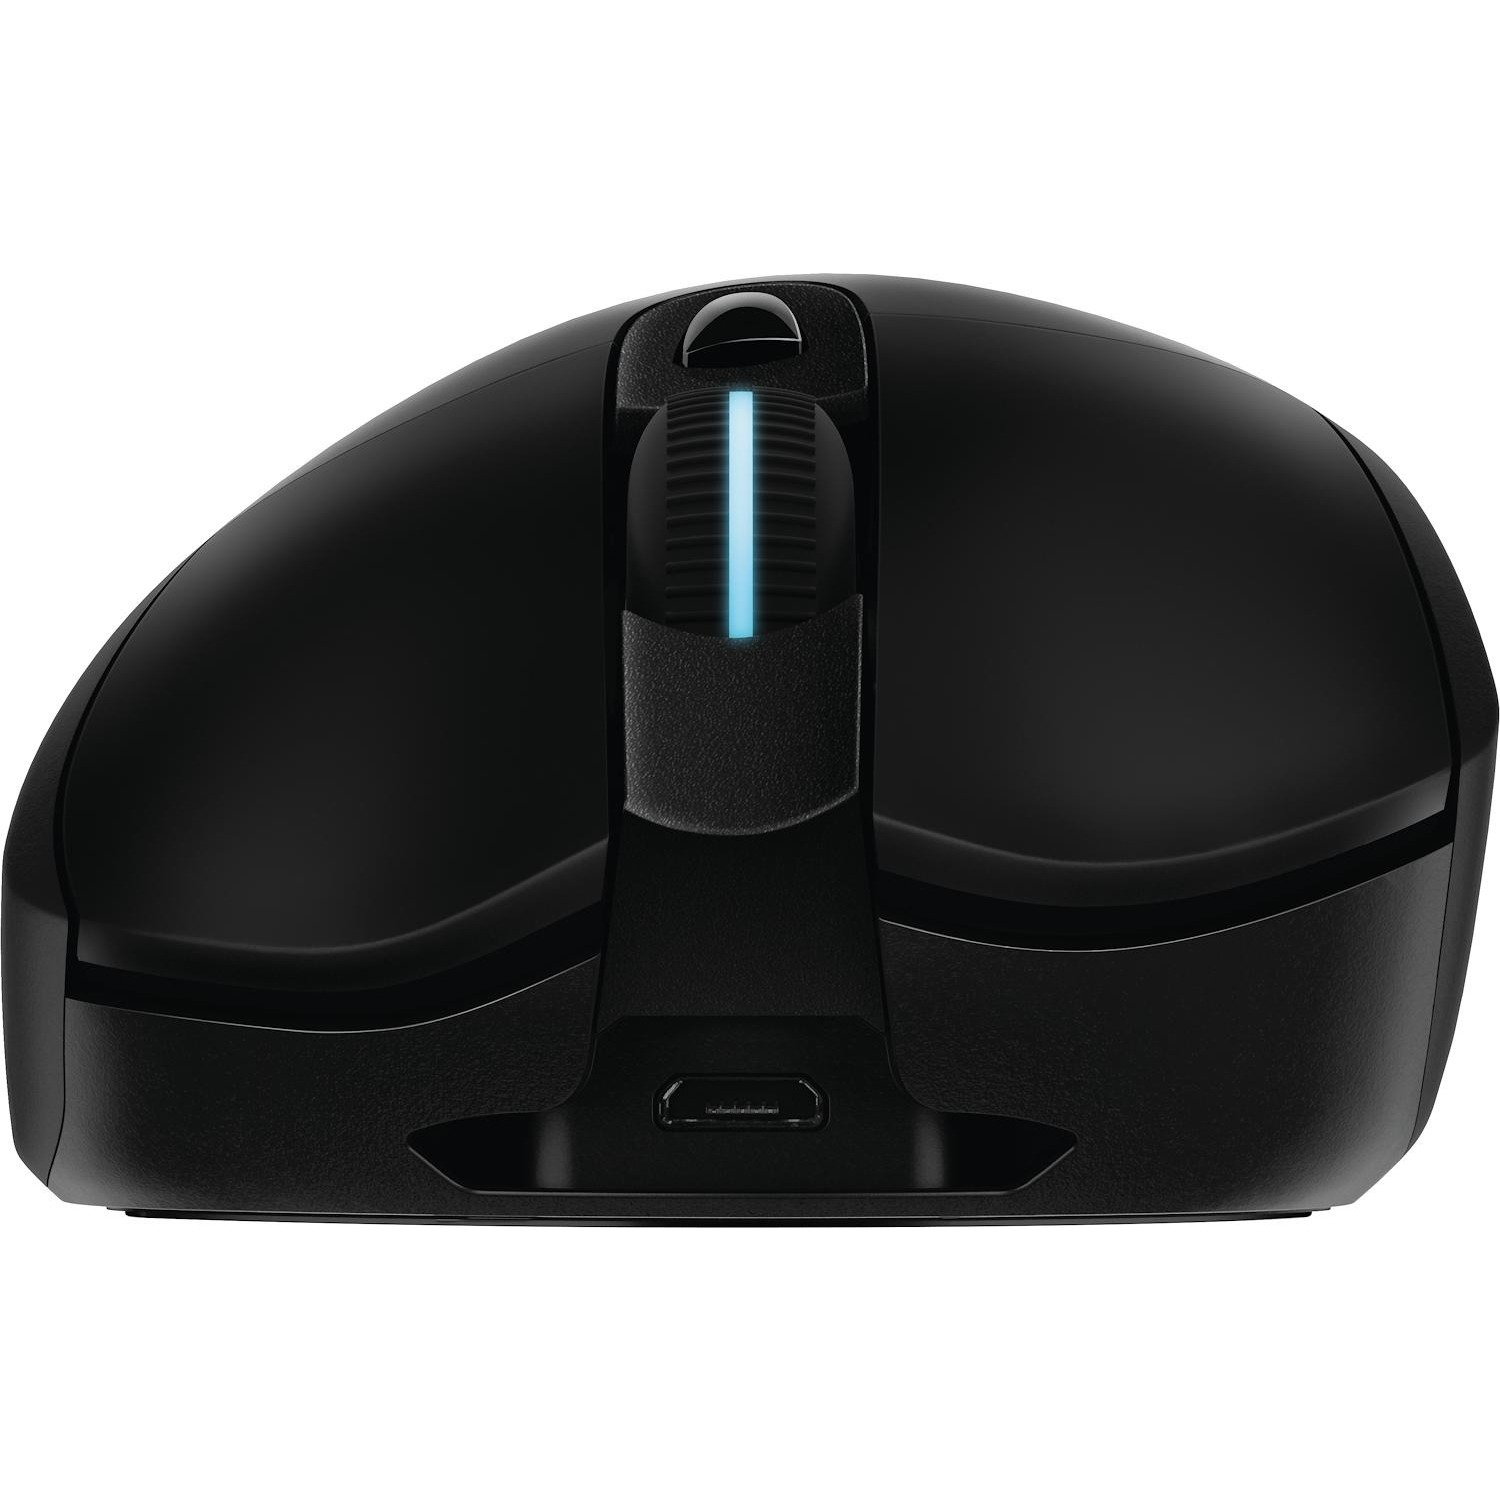 Immagine per Mouse Logitech G703 wireless da DIMOStore